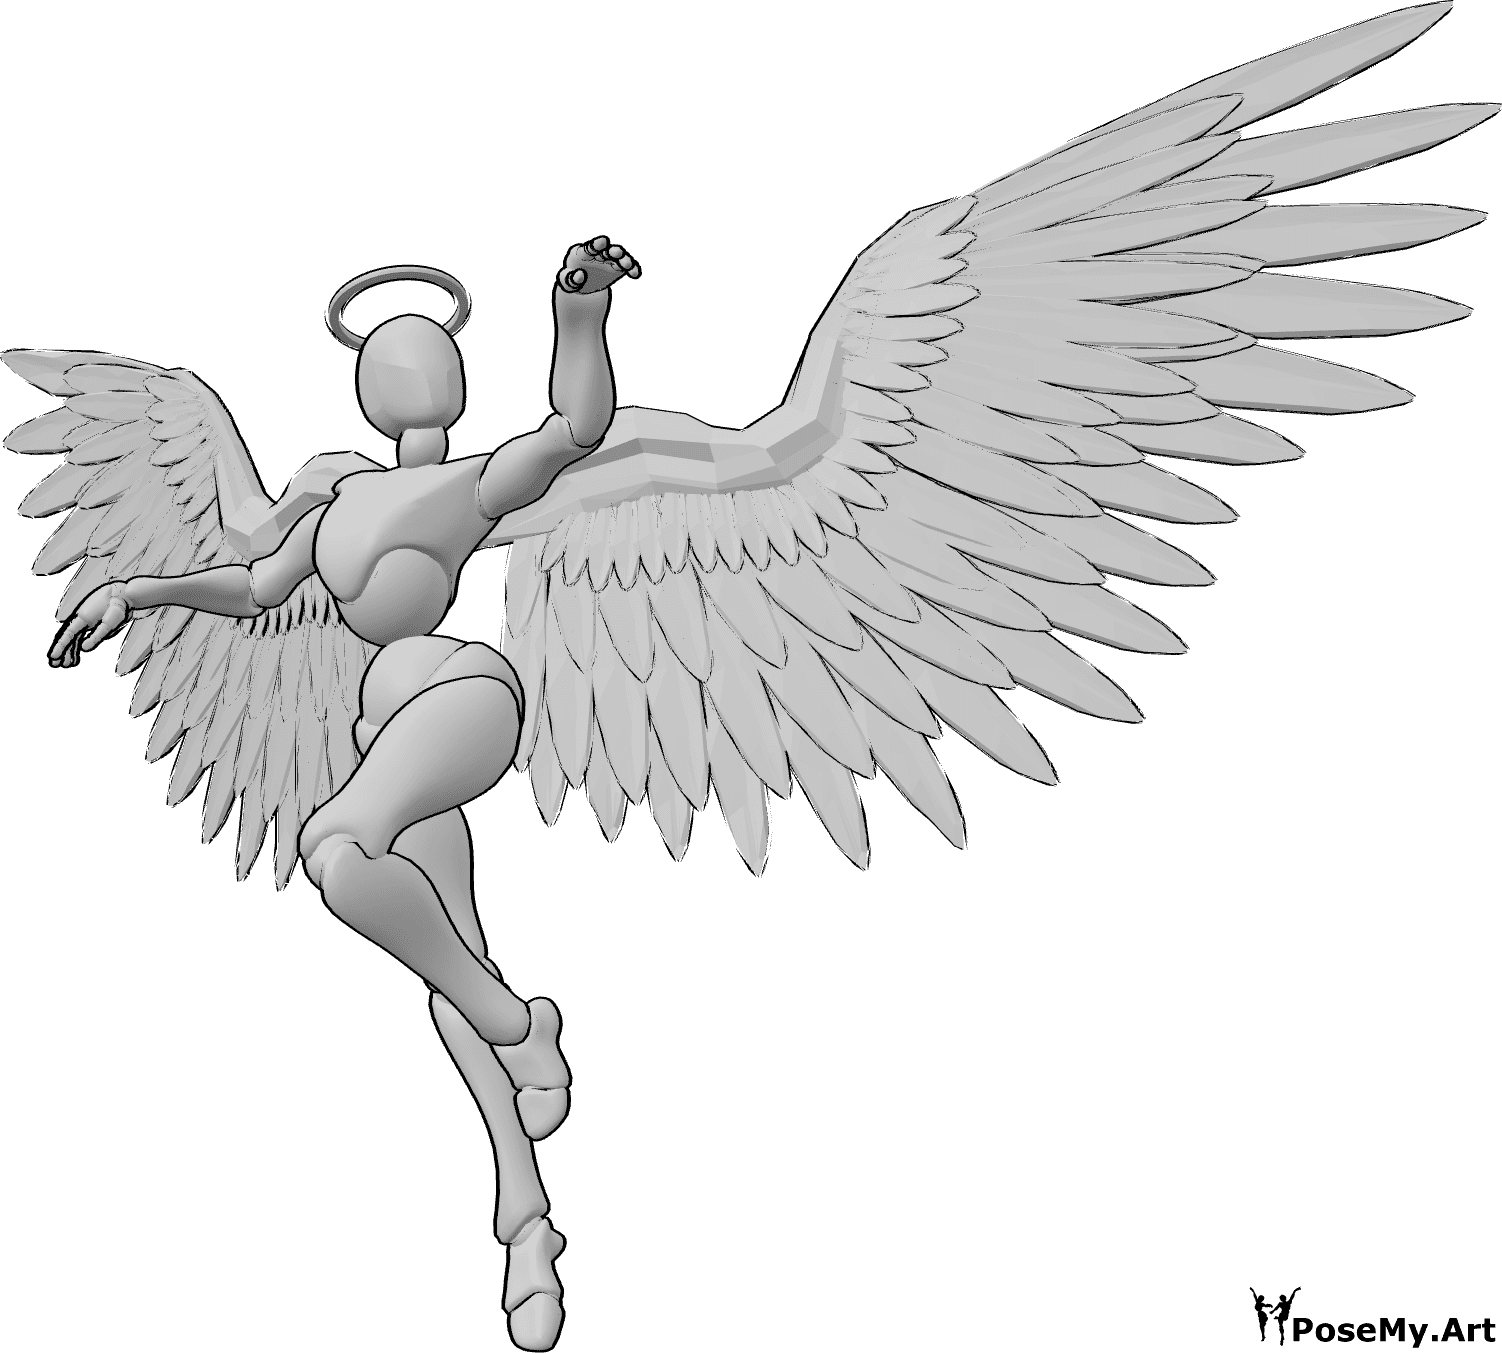 Riferimento alle pose- Posa di angelo femminile che danza - Angelo femminile che vola e danza nell'aria, alzando le mani e guardando a sinistra